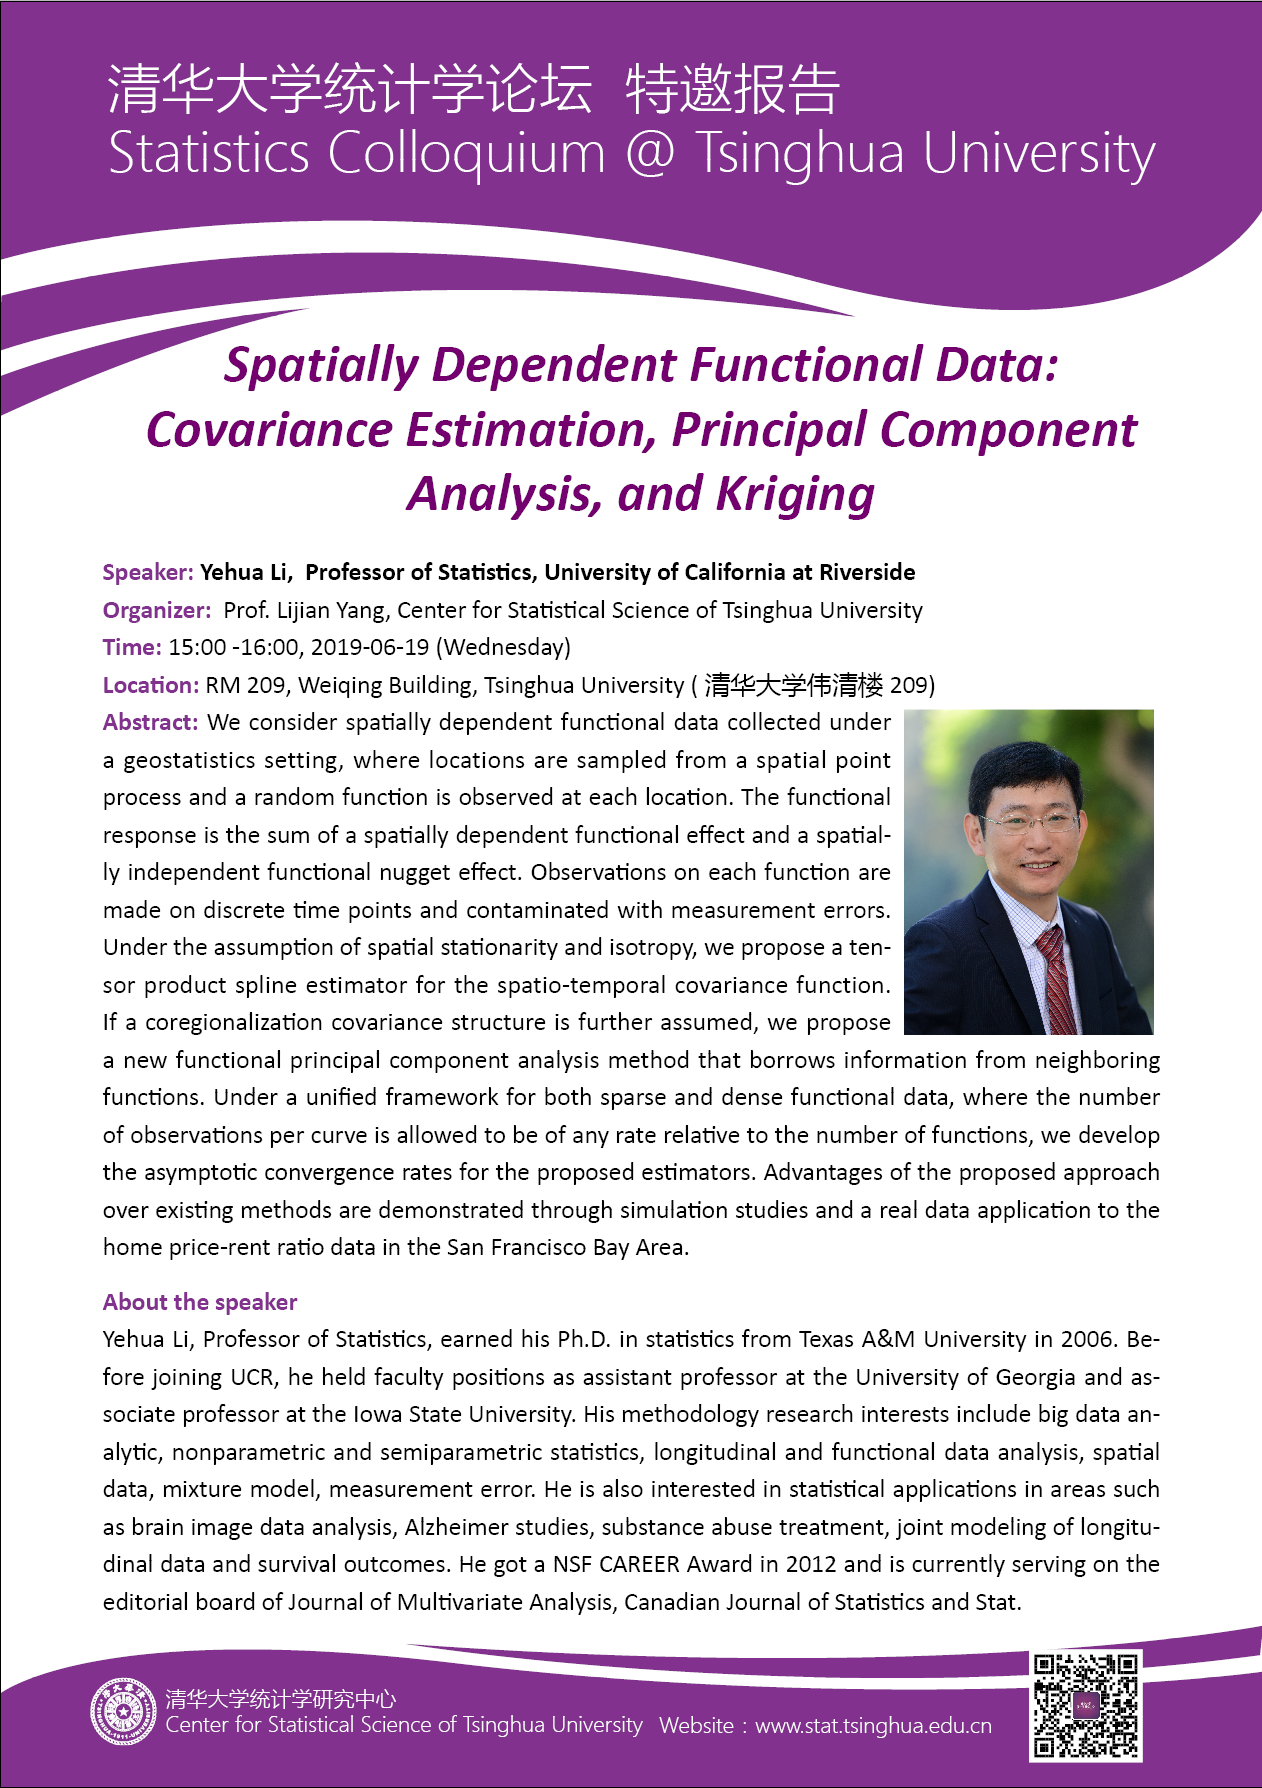 【统计学论坛】 Spatially Dependent Functional Data: Covariance Estimation, Principal Component Analysis, and Kriging